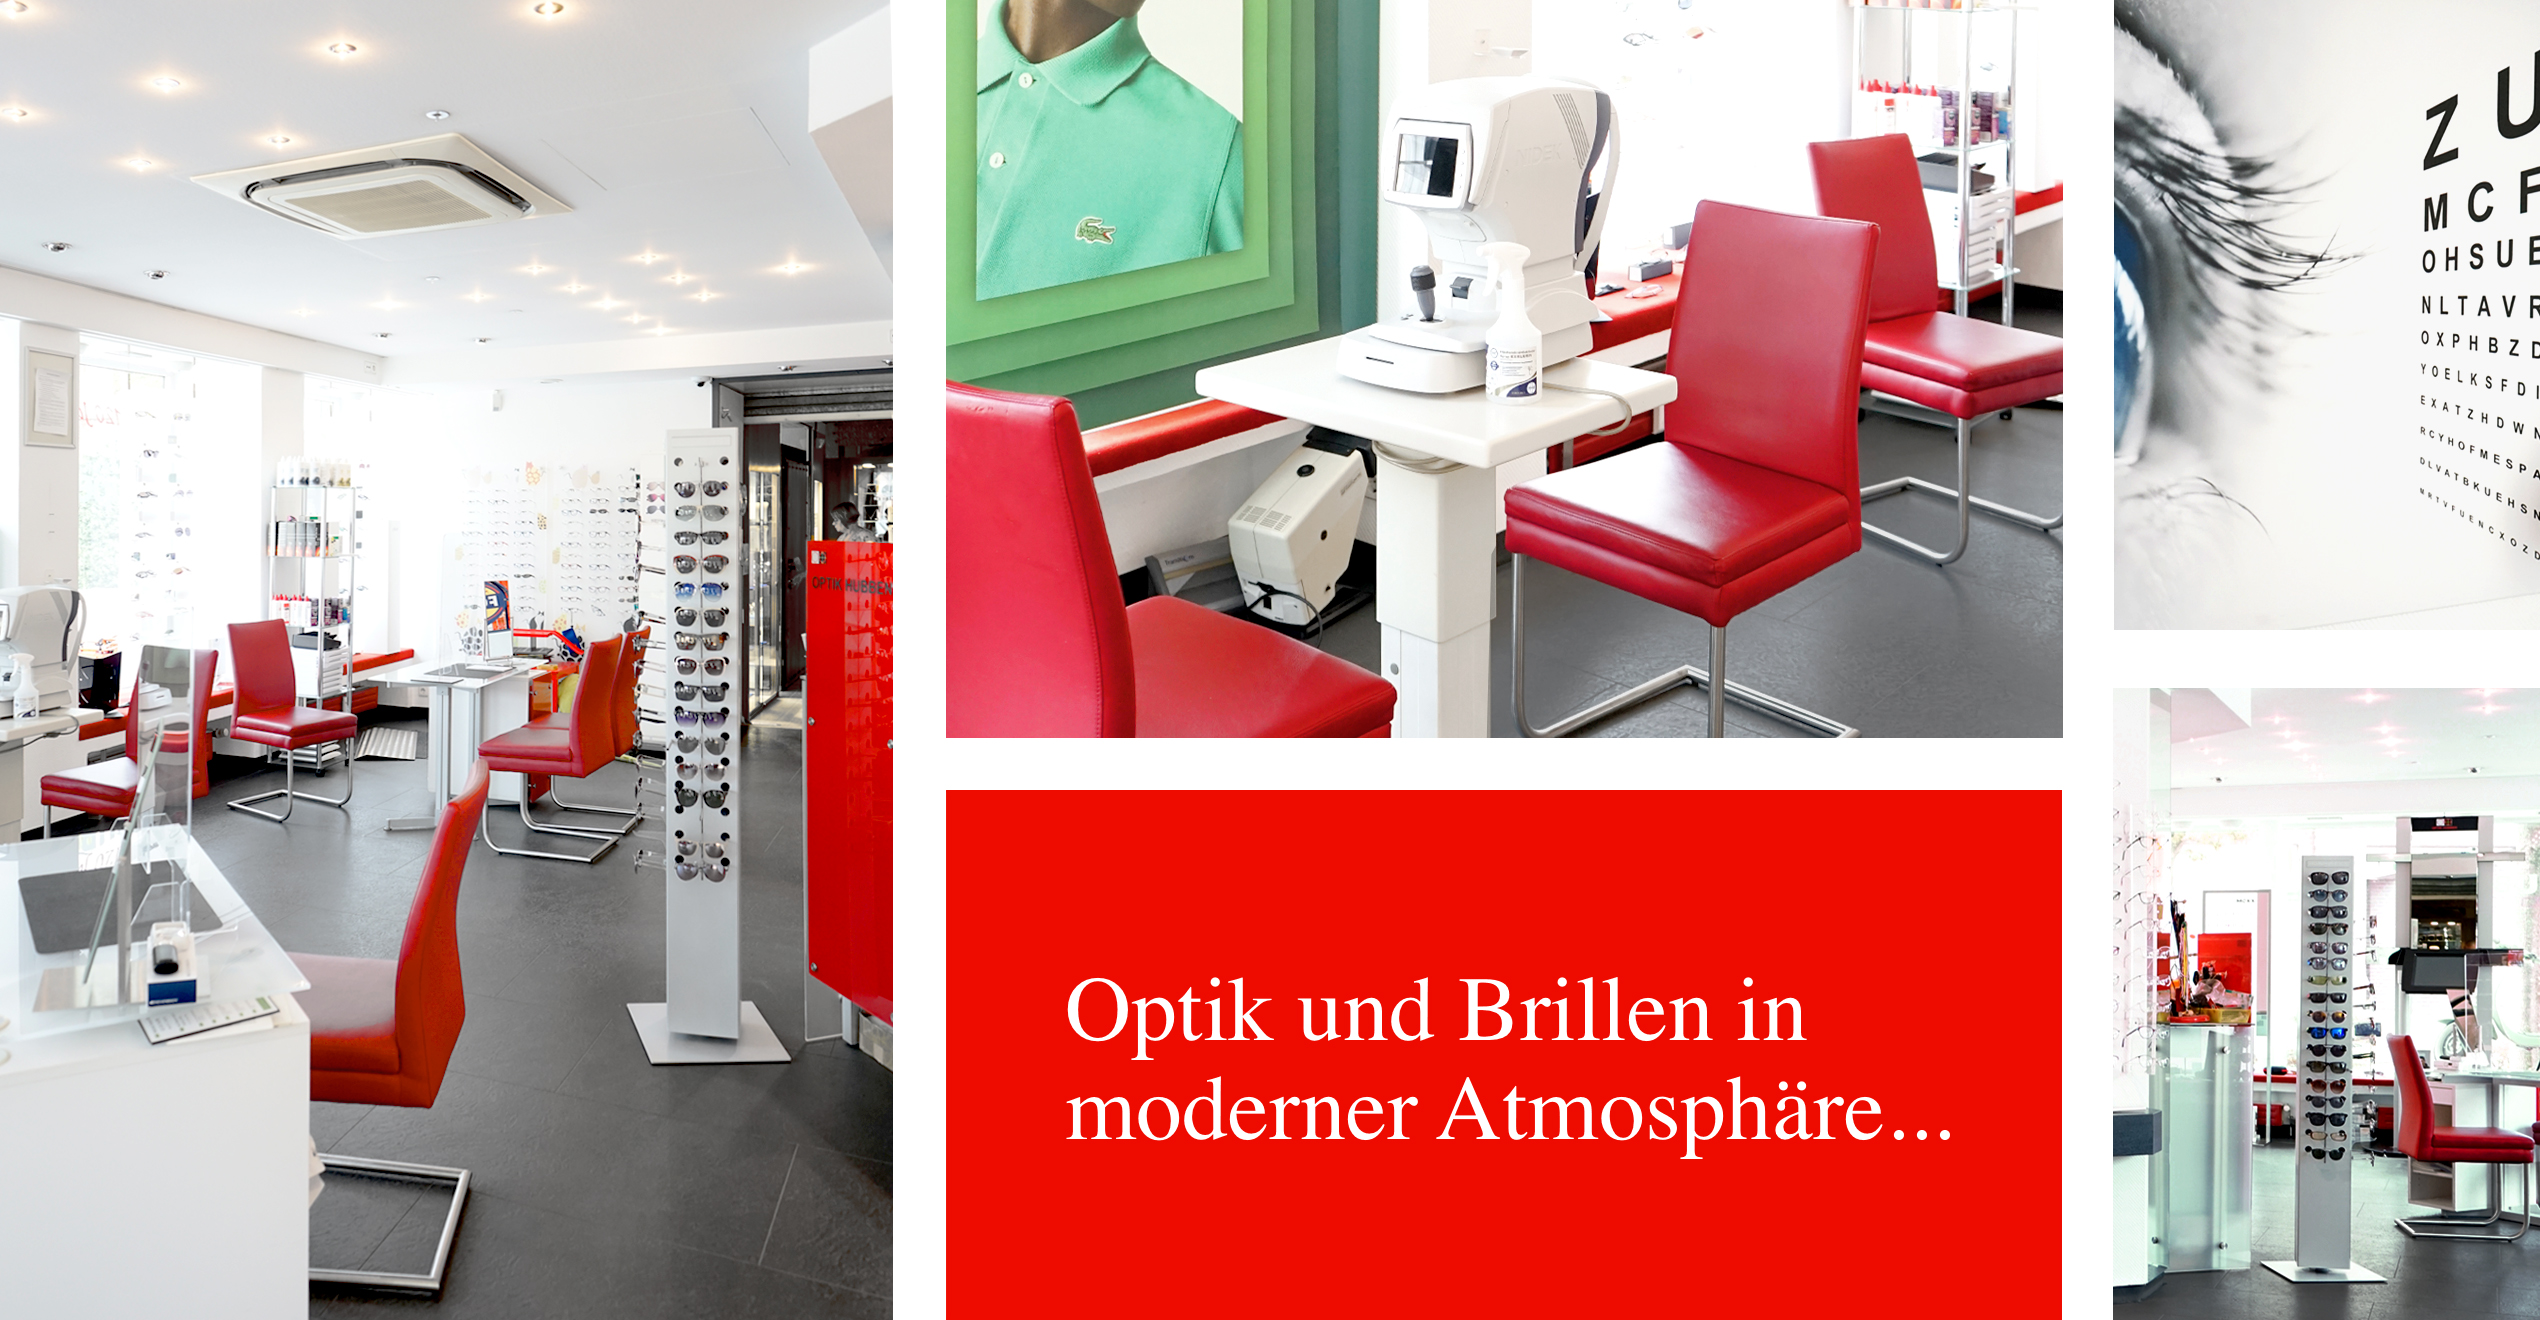 Augenoptiker / Optik, Brillen, Sehtest - Ladenlokal Verkaufsräume - Hubben Neukirchen-Vluyn, Niederrheinallee 330a